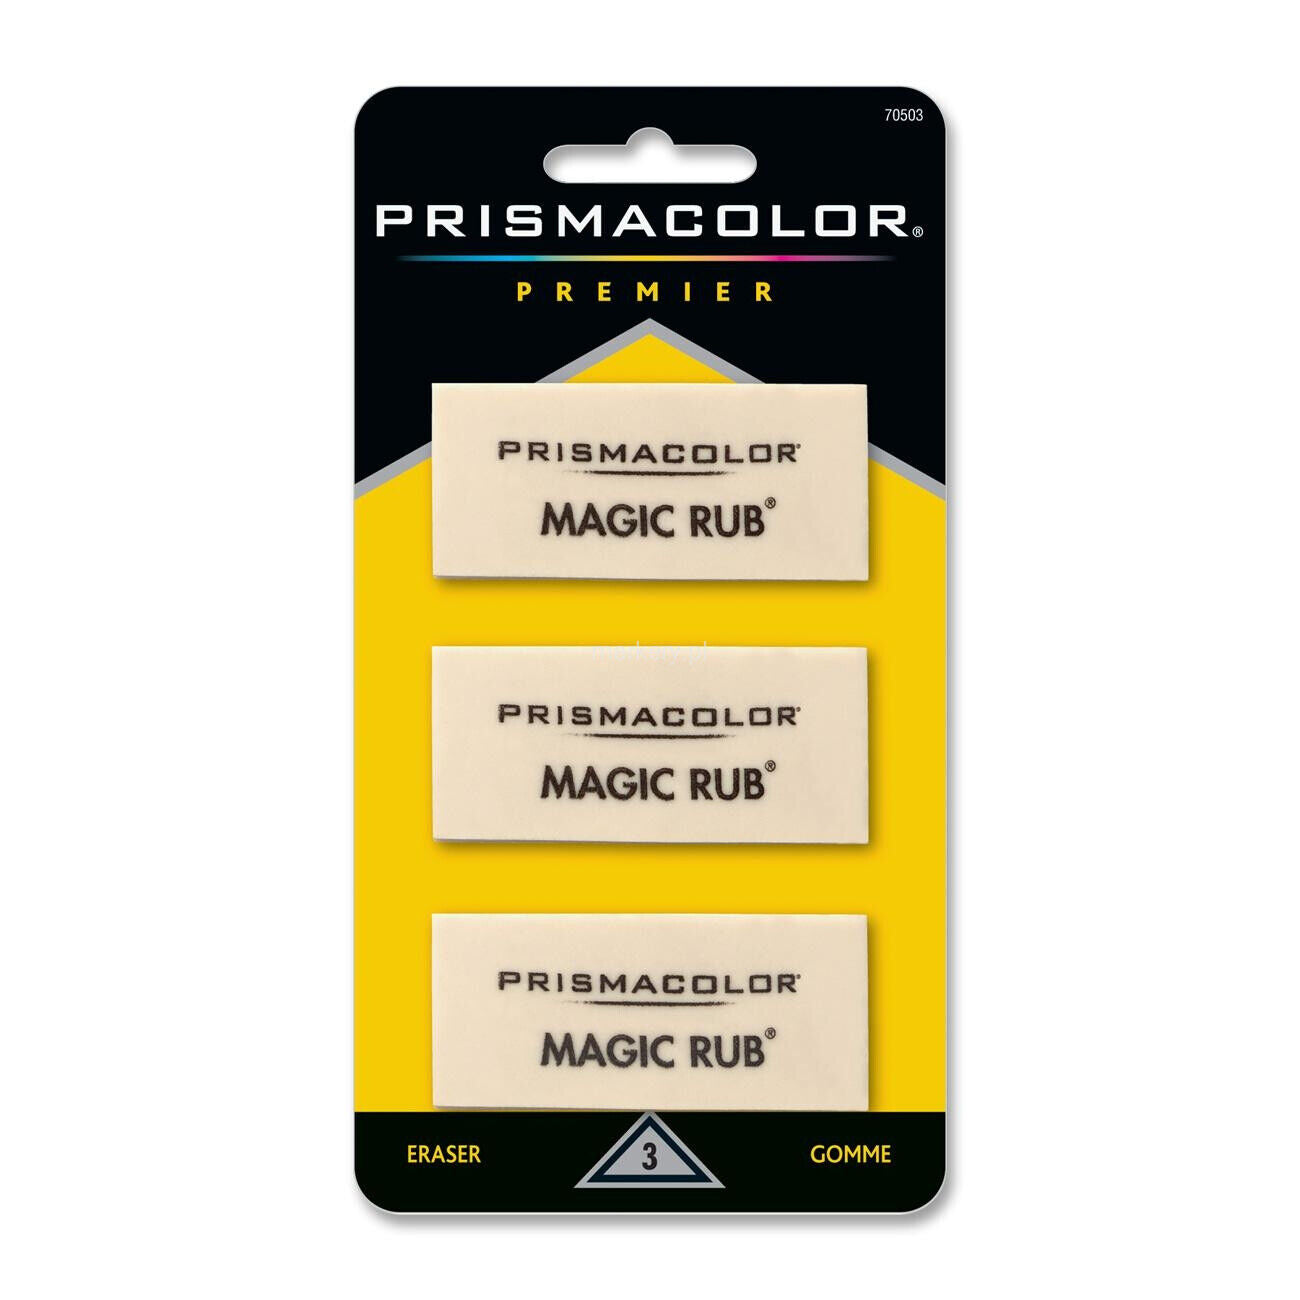 Prismacolor Premier Magic Rub Borrador de vinilo, paquete de 3